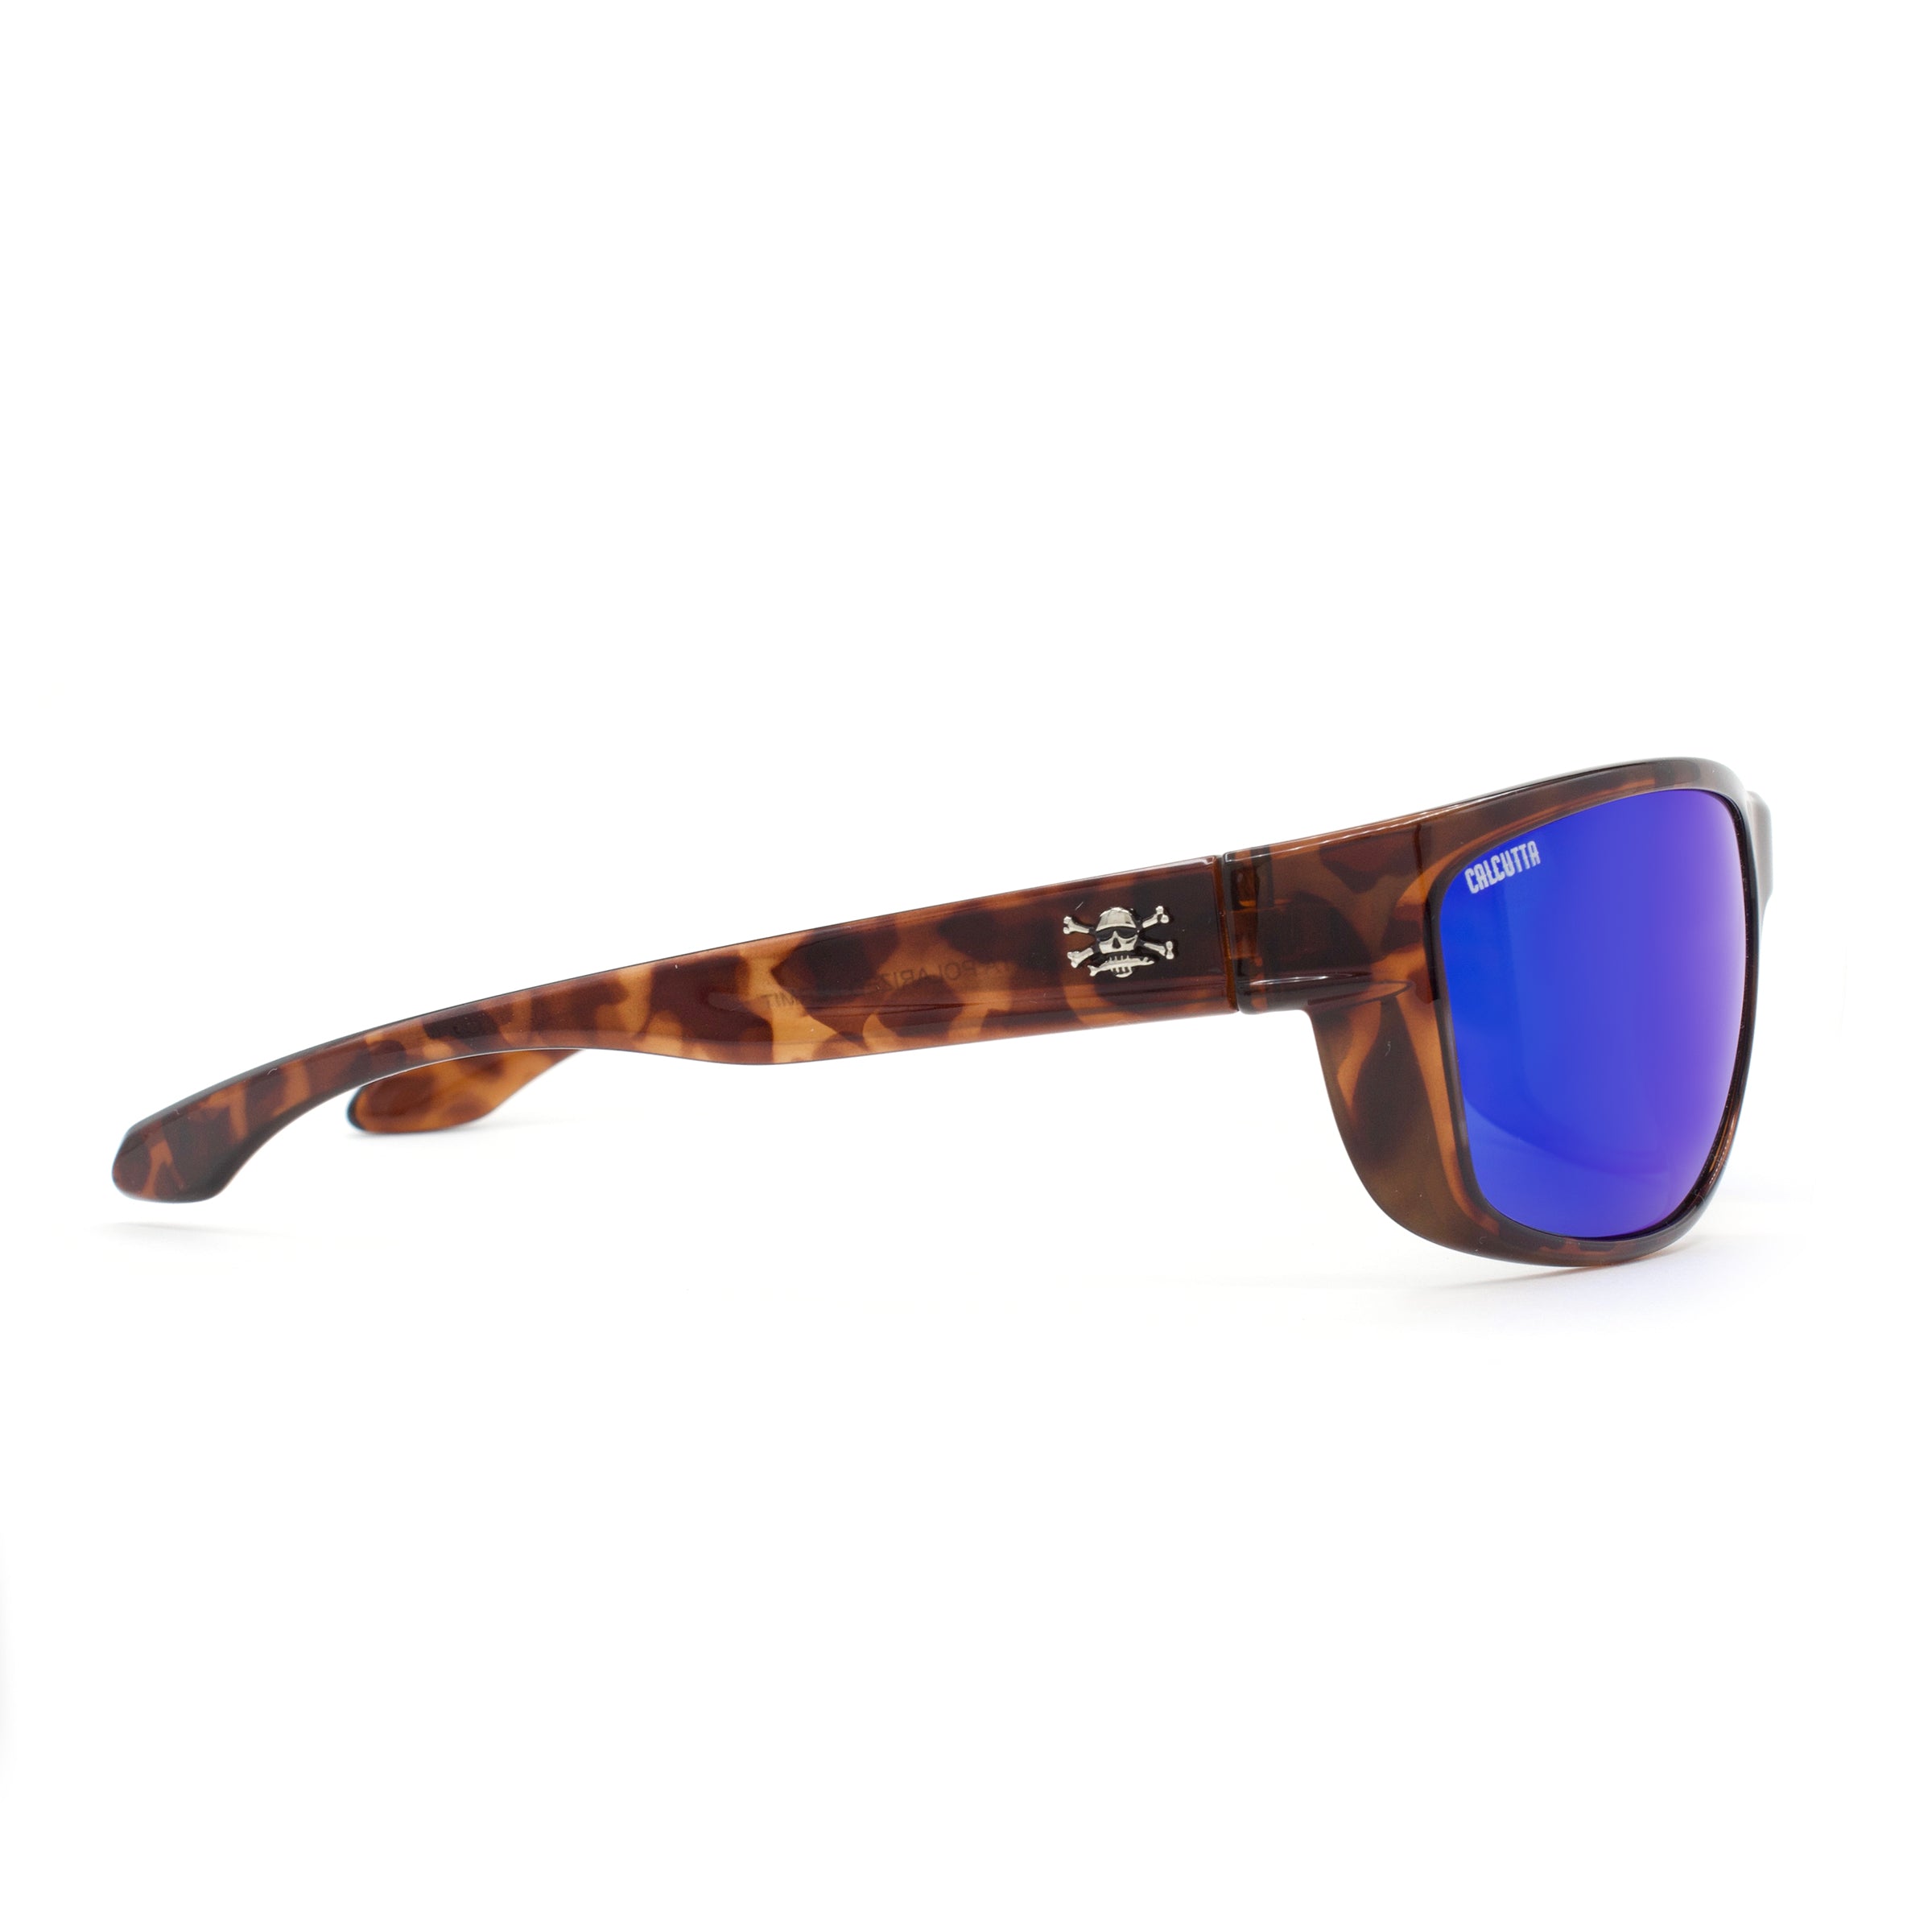 Calcutta Cross sunglasses tortoise frame blue mirror lens side